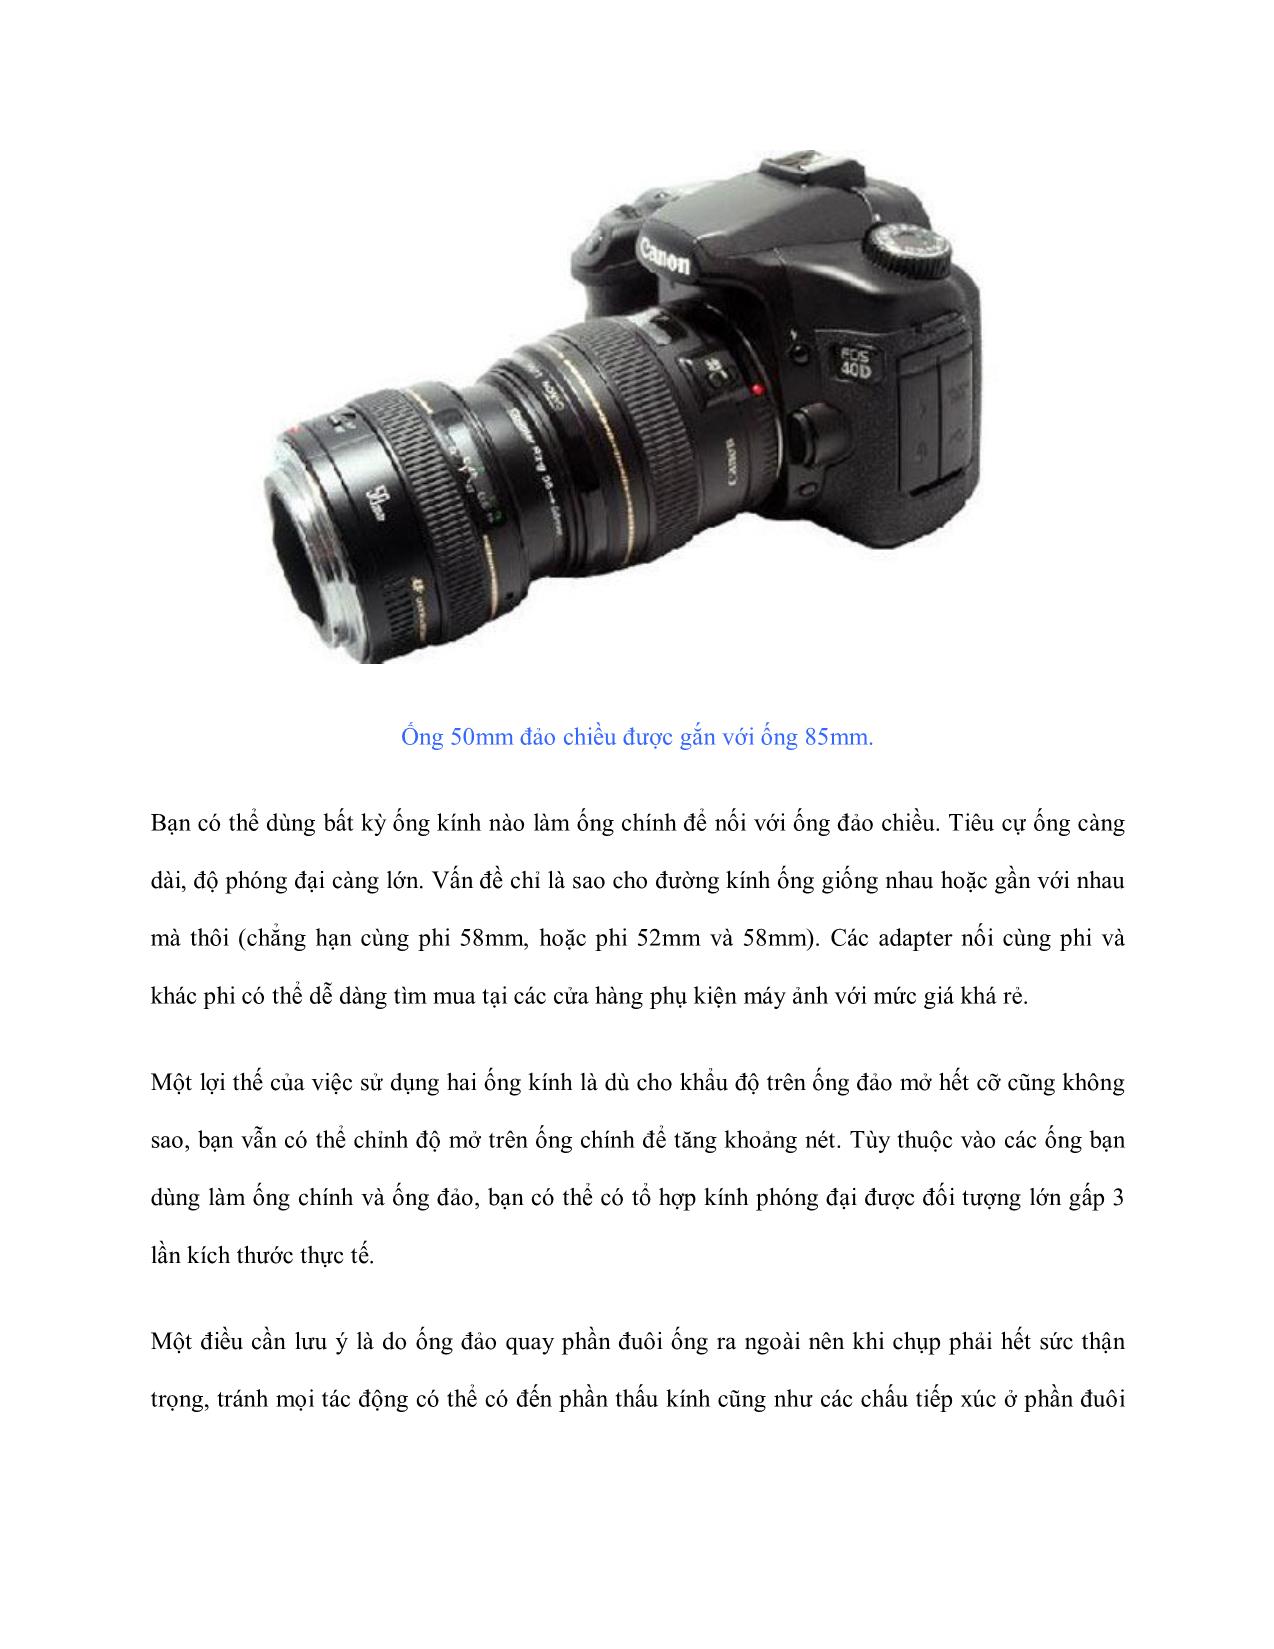 Tìm hiểu chụp cận cảnh - Đảo ngược ống kính trang 7